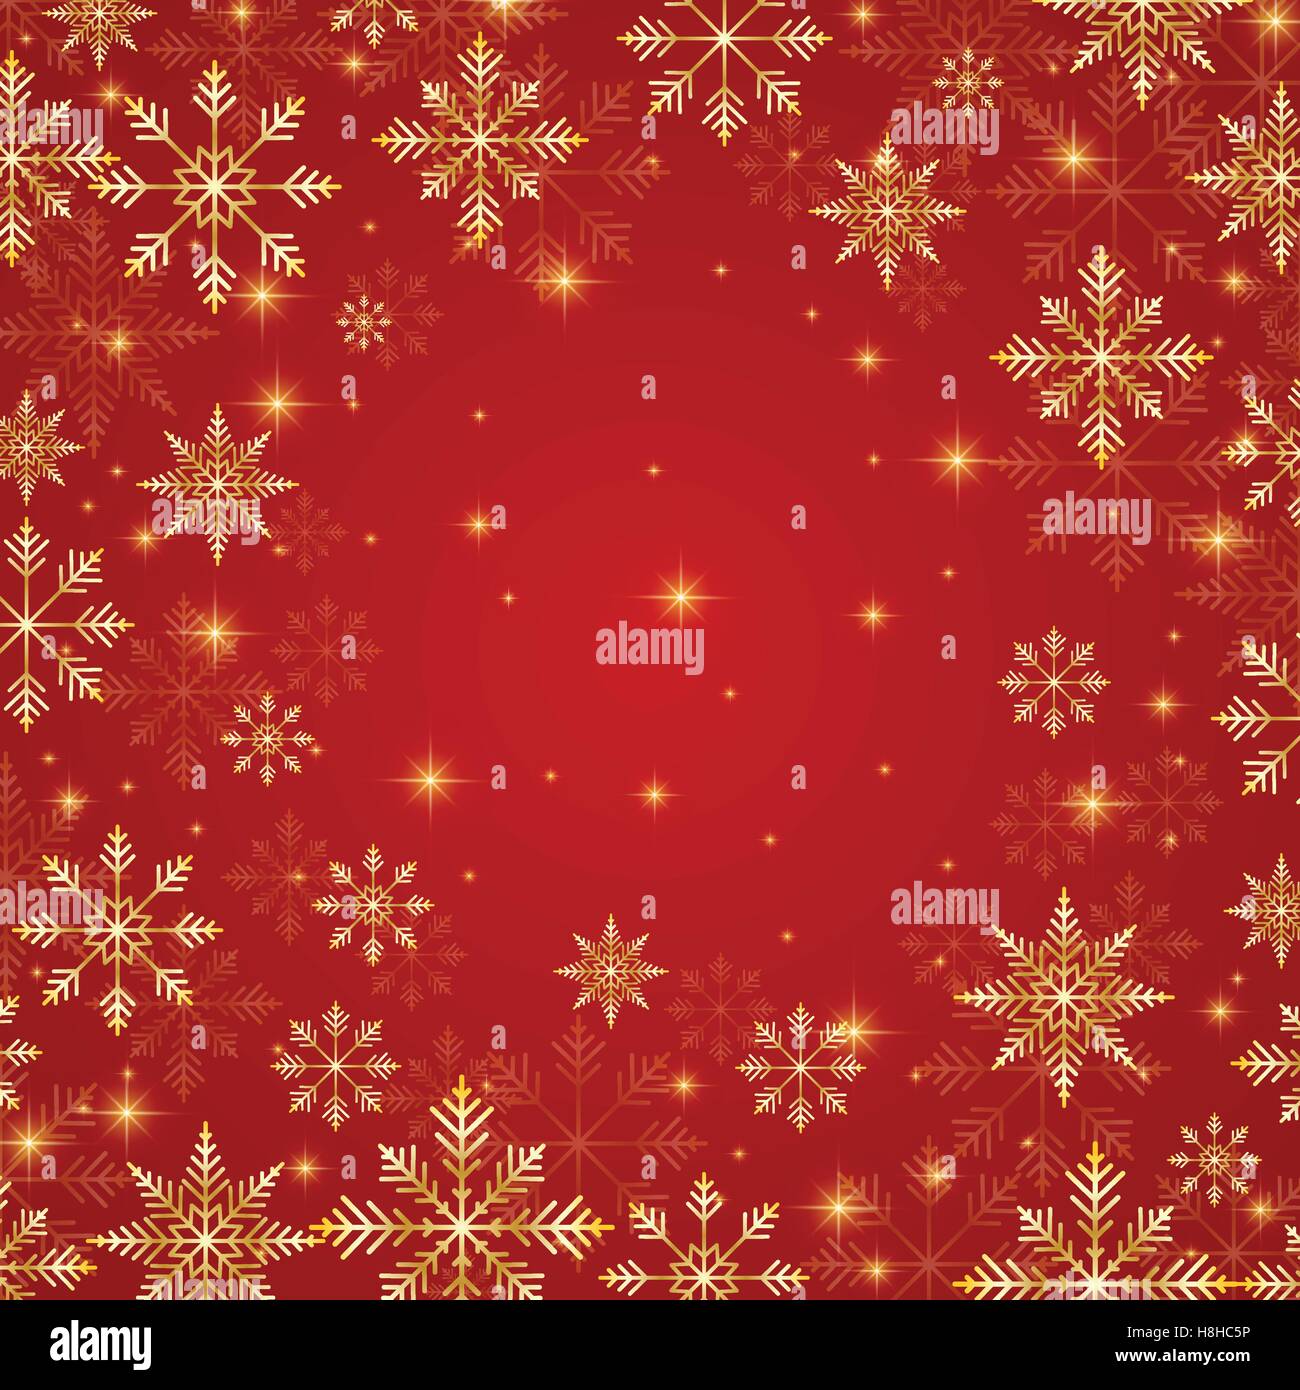 Weihnachten und Silvester roten Hintergrund mit goldenen Schneeflocken. Vektor-illustration Stock Vektor